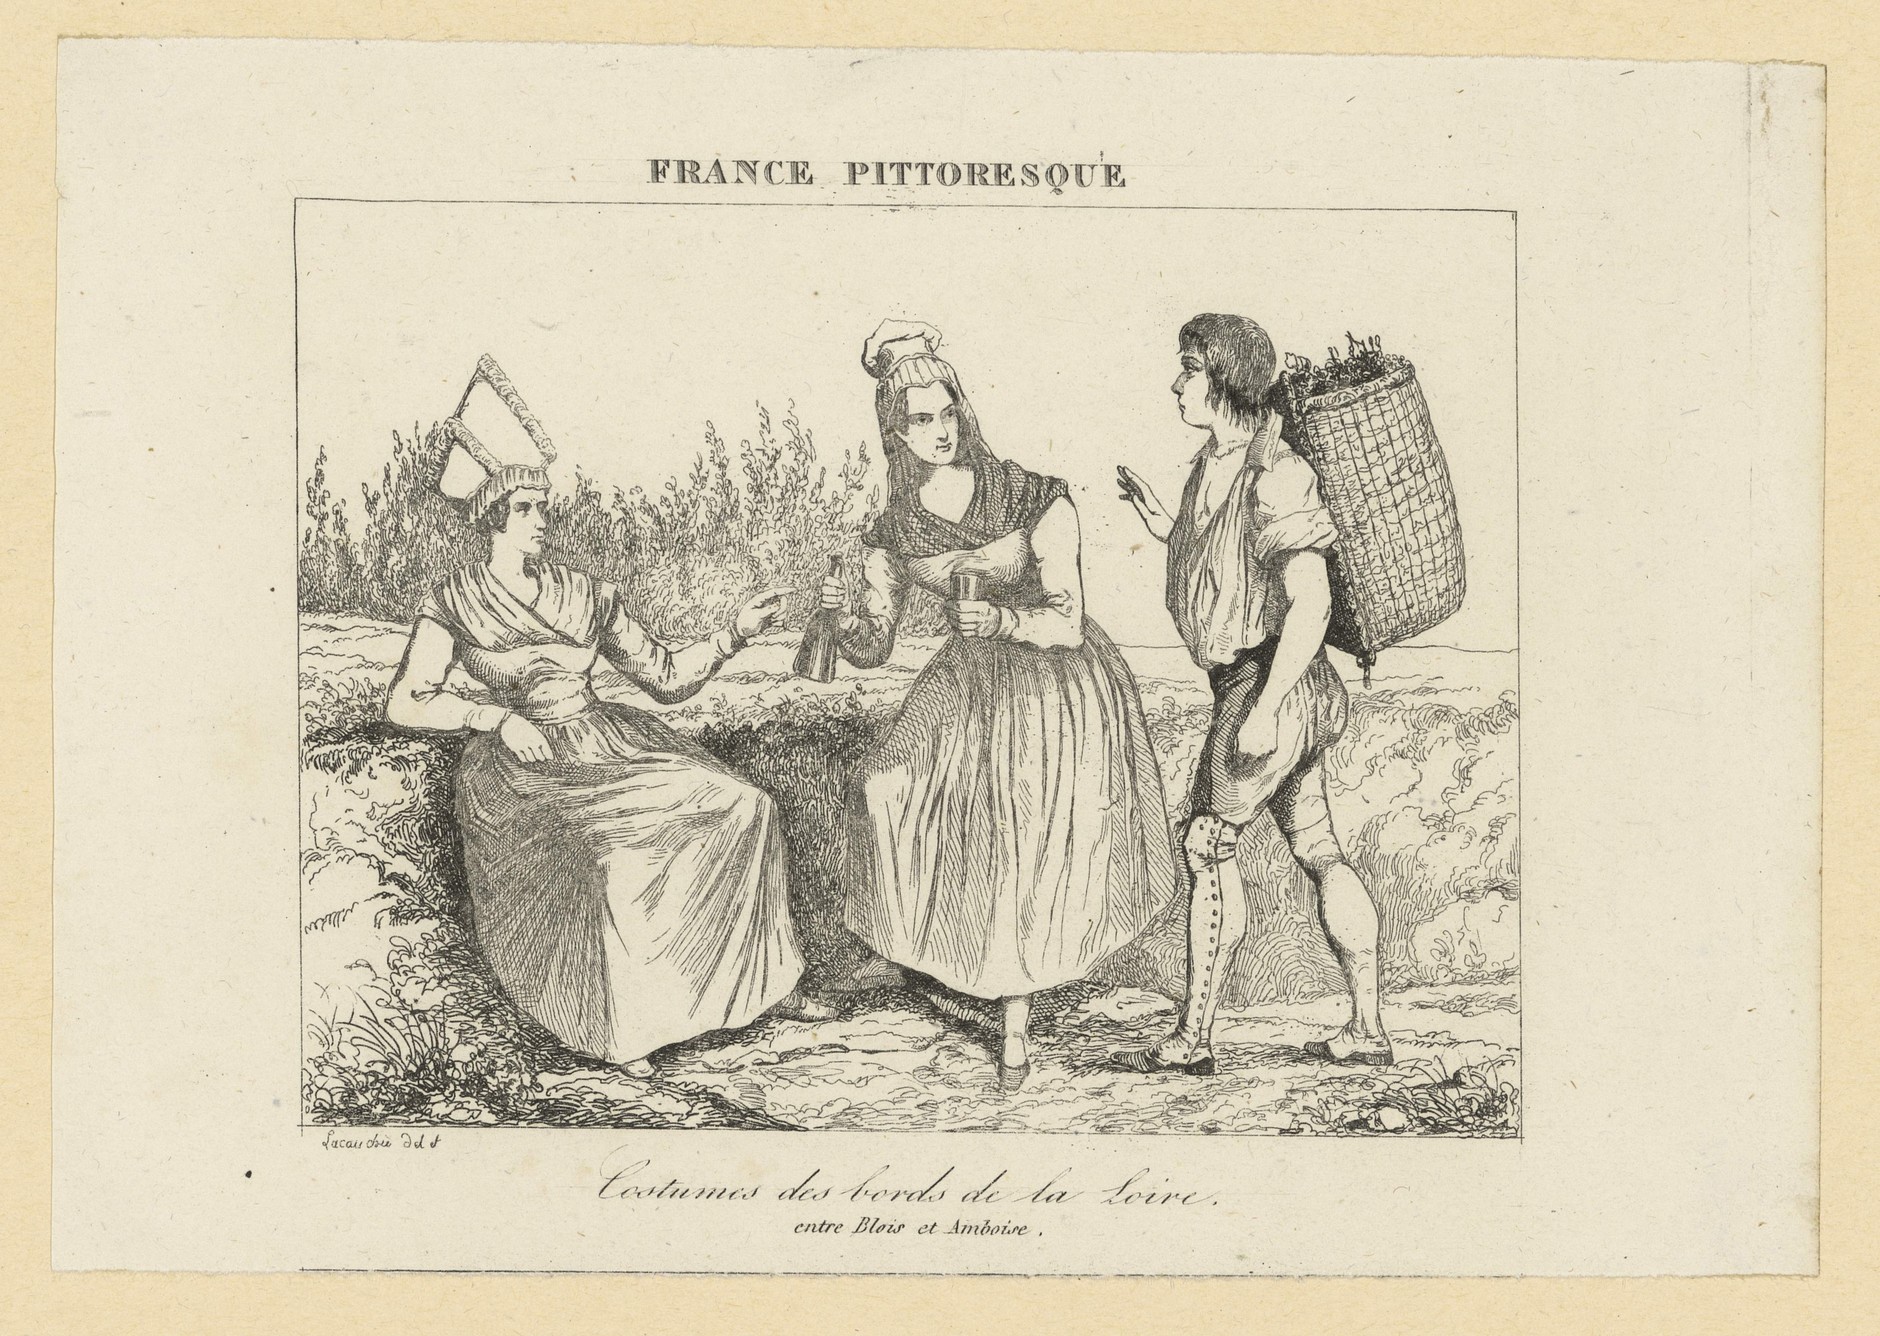 Lacauchie, Costumes des bords de Loire entre Blois et Amboise, gravure sur bois, 1835